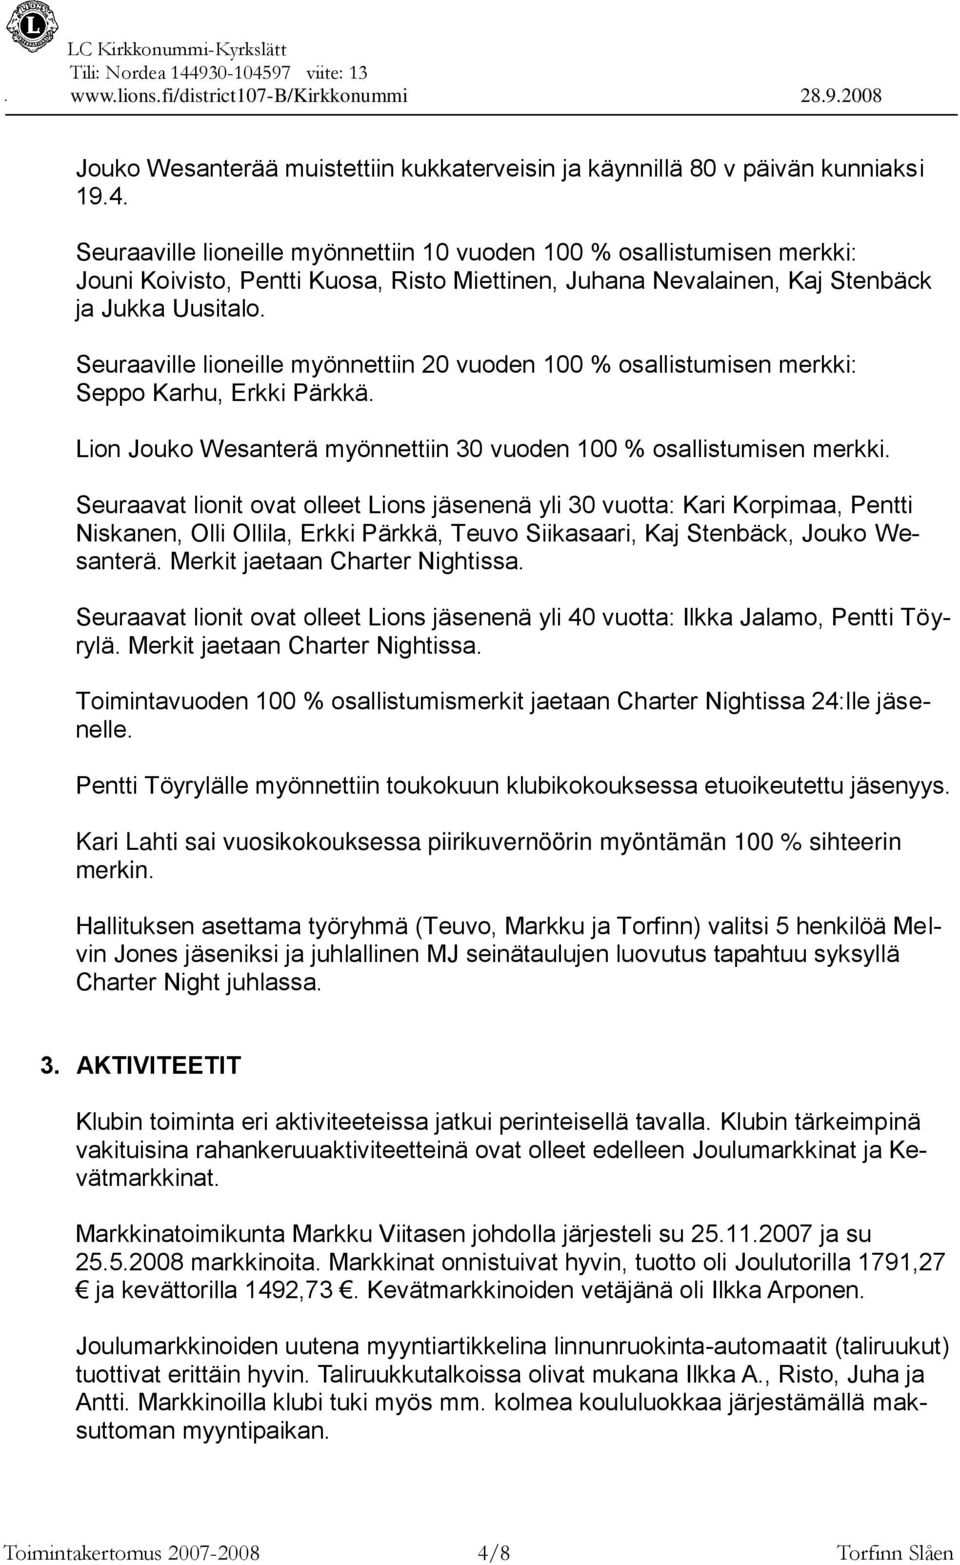 Seuraaville lioneille myönnettiin 20 vuoden 100 % osallistumisen merkki: Seppo Karhu, Erkki Pärkkä. Lion Jouko Wesanterä myönnettiin 30 vuoden 100 % osallistumisen merkki.